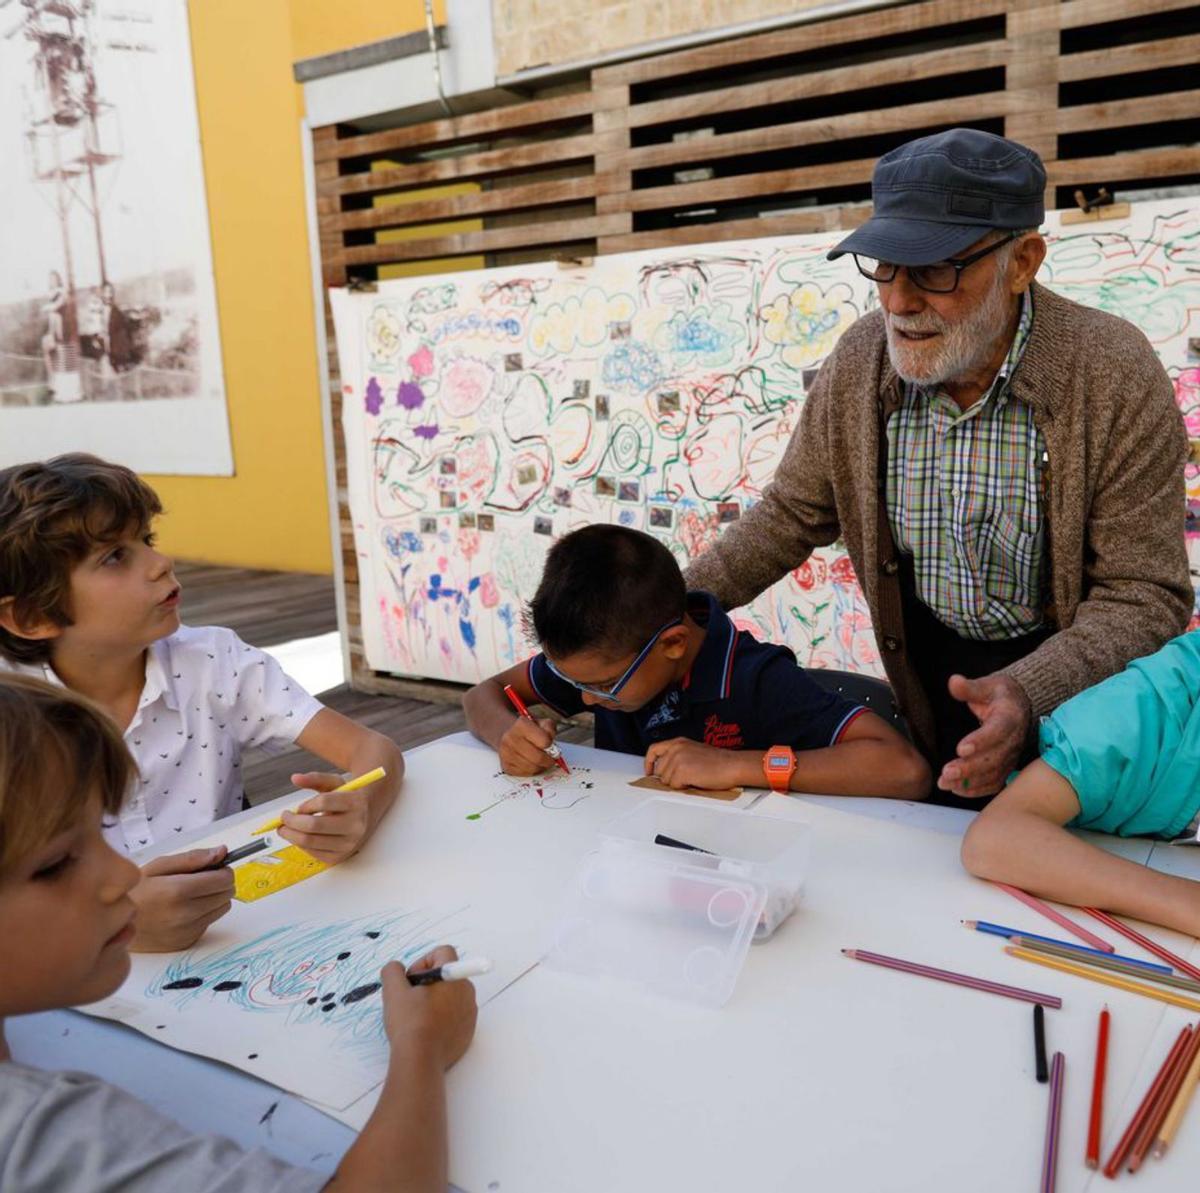 El artista José Luis Alonso Coomonte, en un taller infantil. | Emilio Fraile